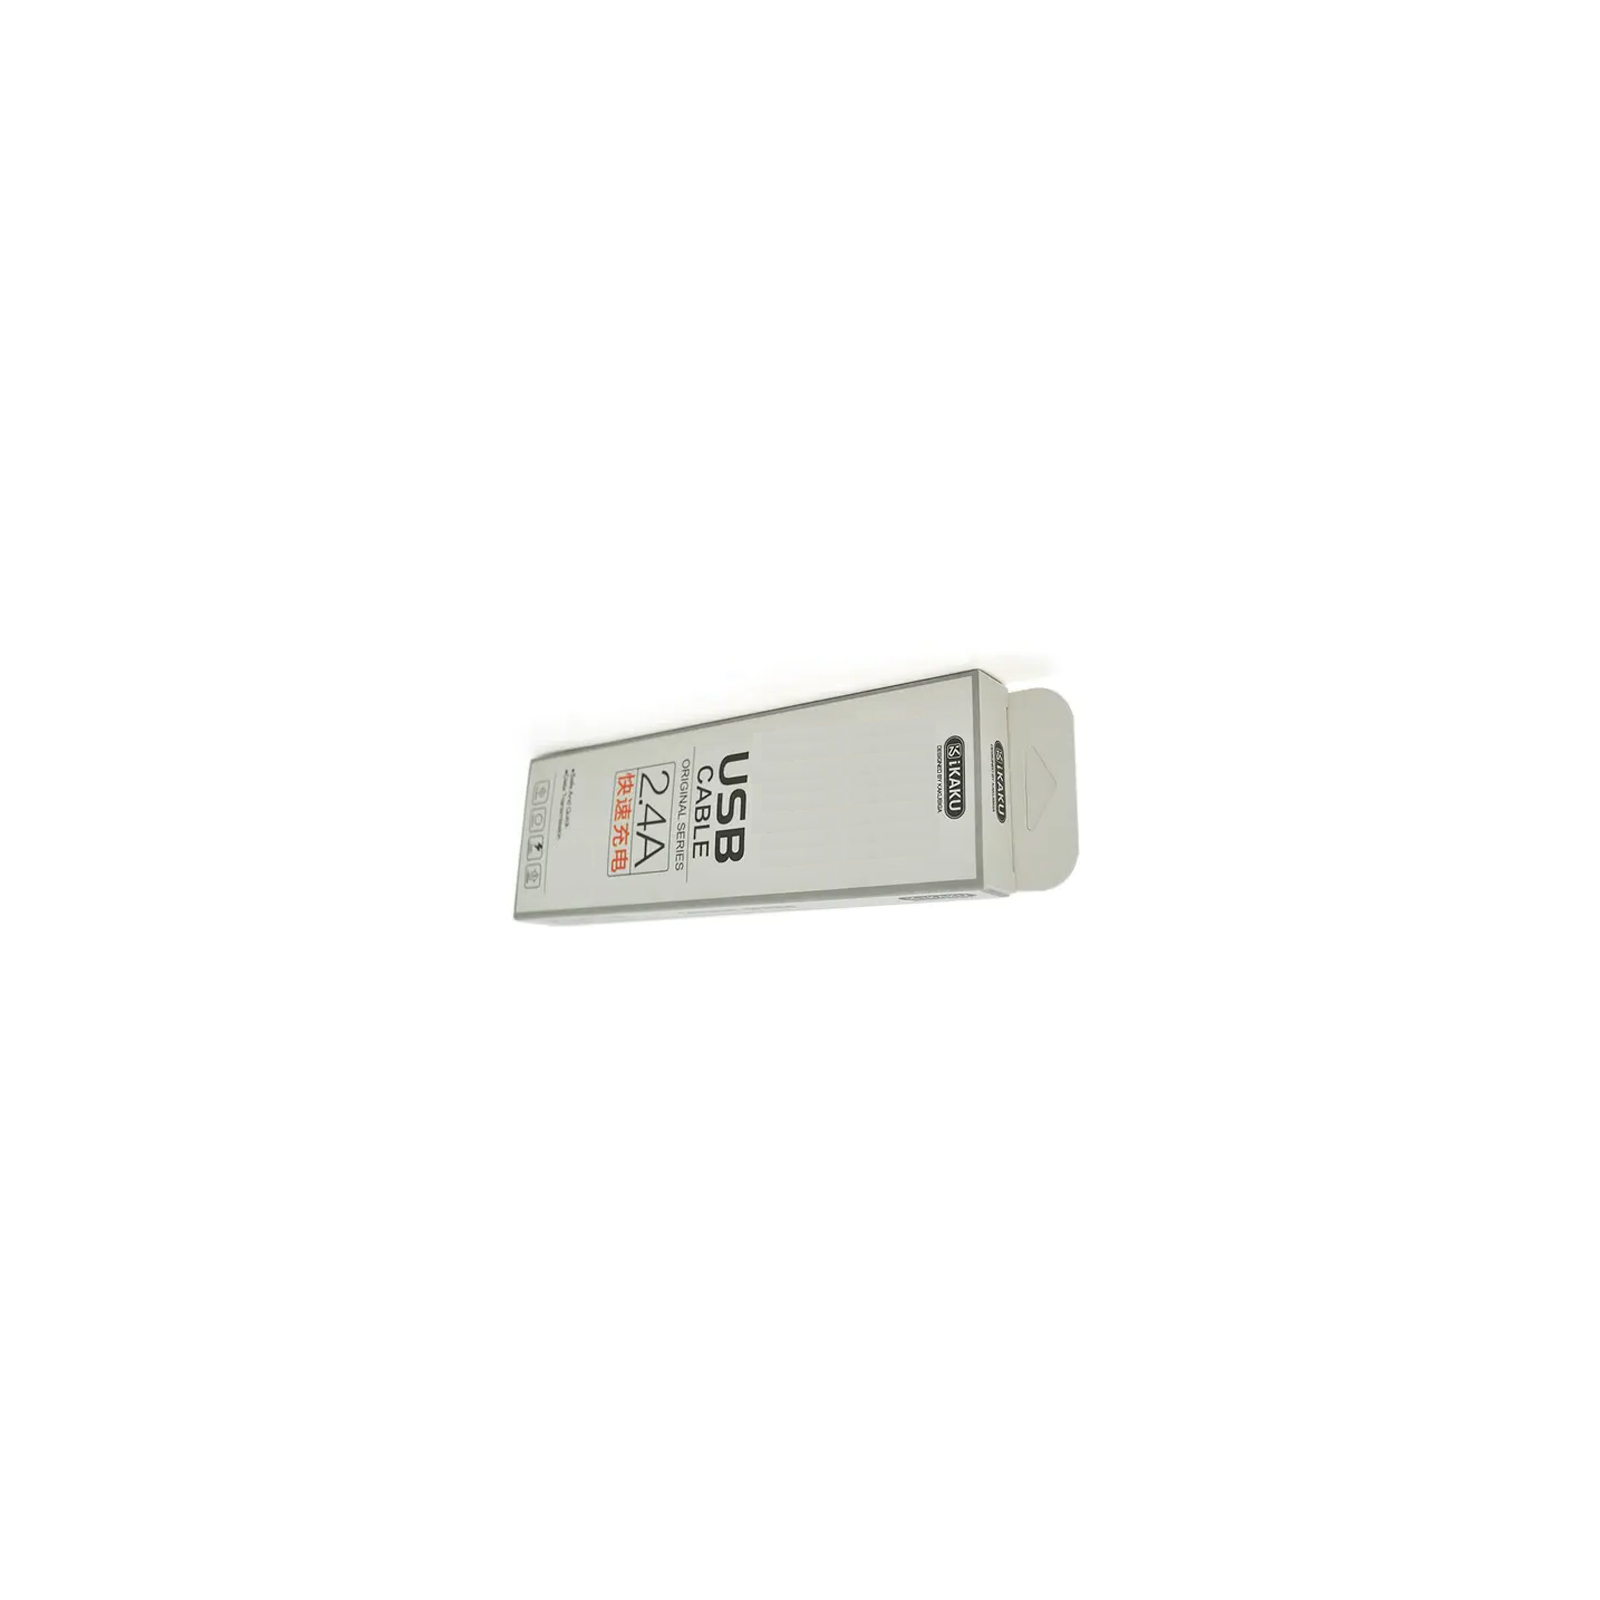 Дата кабель USB 2.0 AM to Micro 5P 1.0m KSC-060 SUCHANG 2.4A White iKAKU (KSC-060-M)